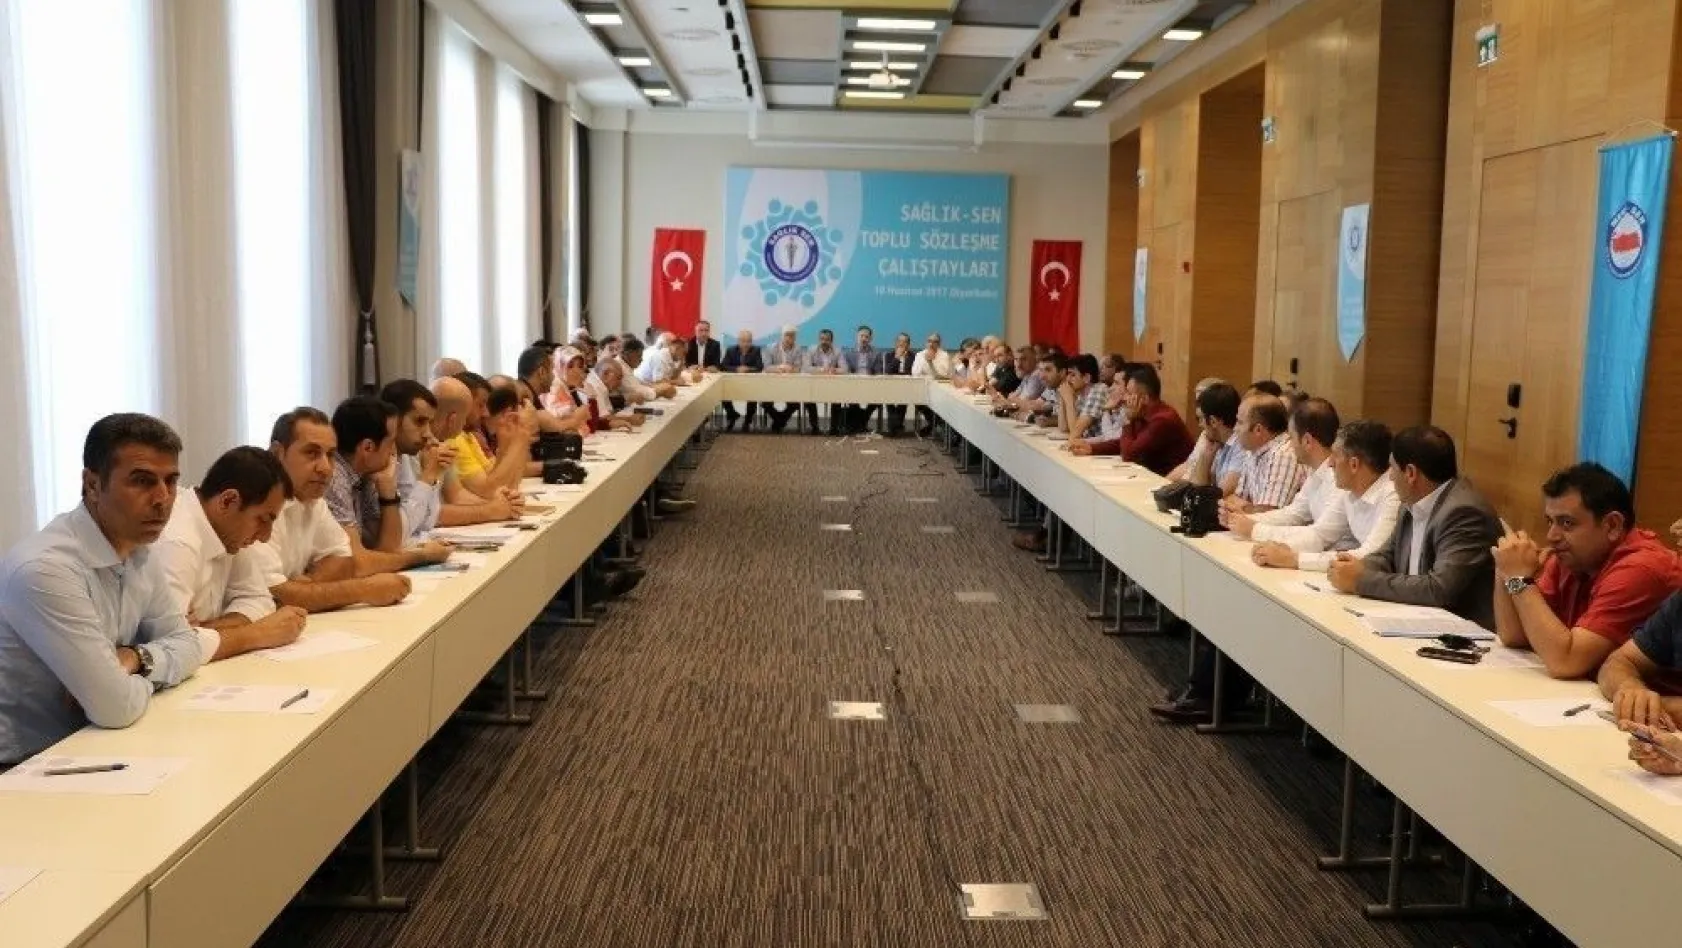 Sağlık-Sen toplu sözleşme çalıştayını Diyarbakır'da gerçekleştirdi
